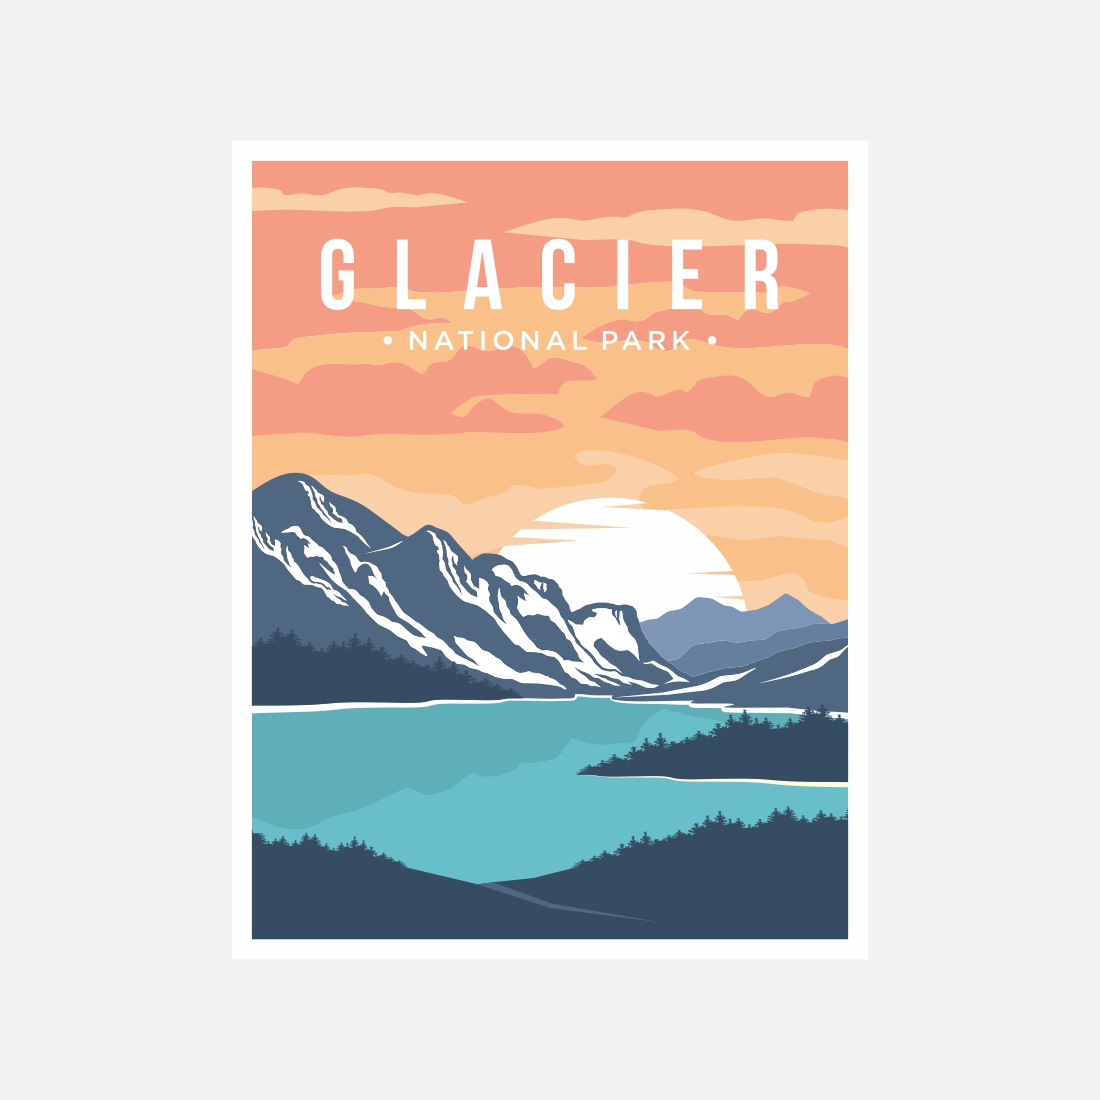 Glacier National Park poster vector illustration design – Only $8 cover image.